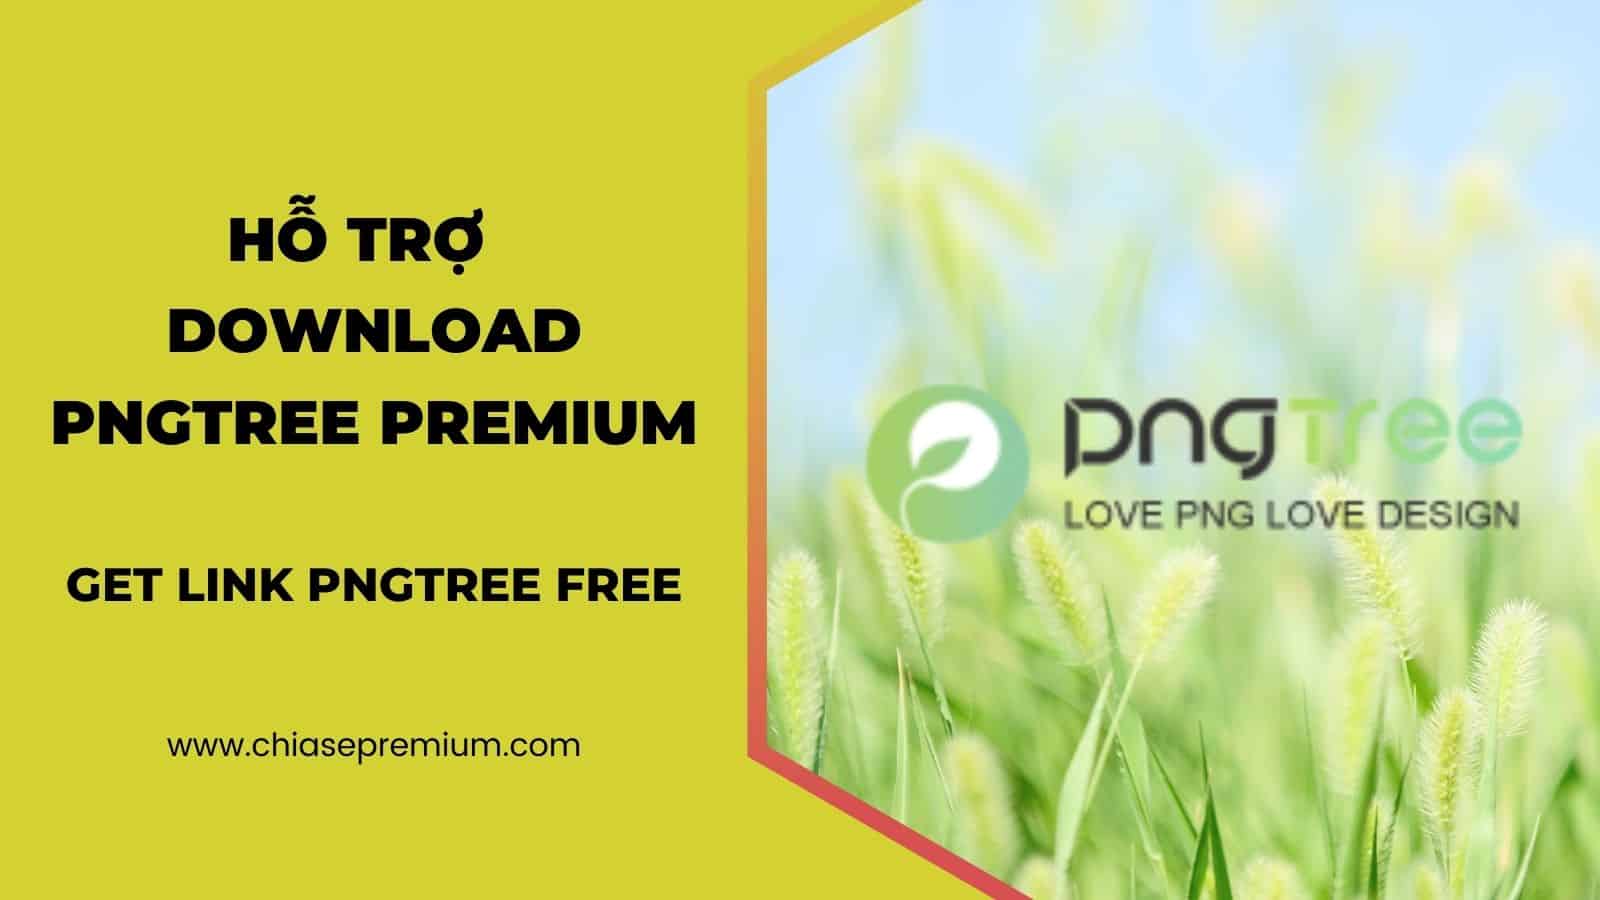 Chia sẻ tài khoản Pngtree Premium và Get link pngtree free